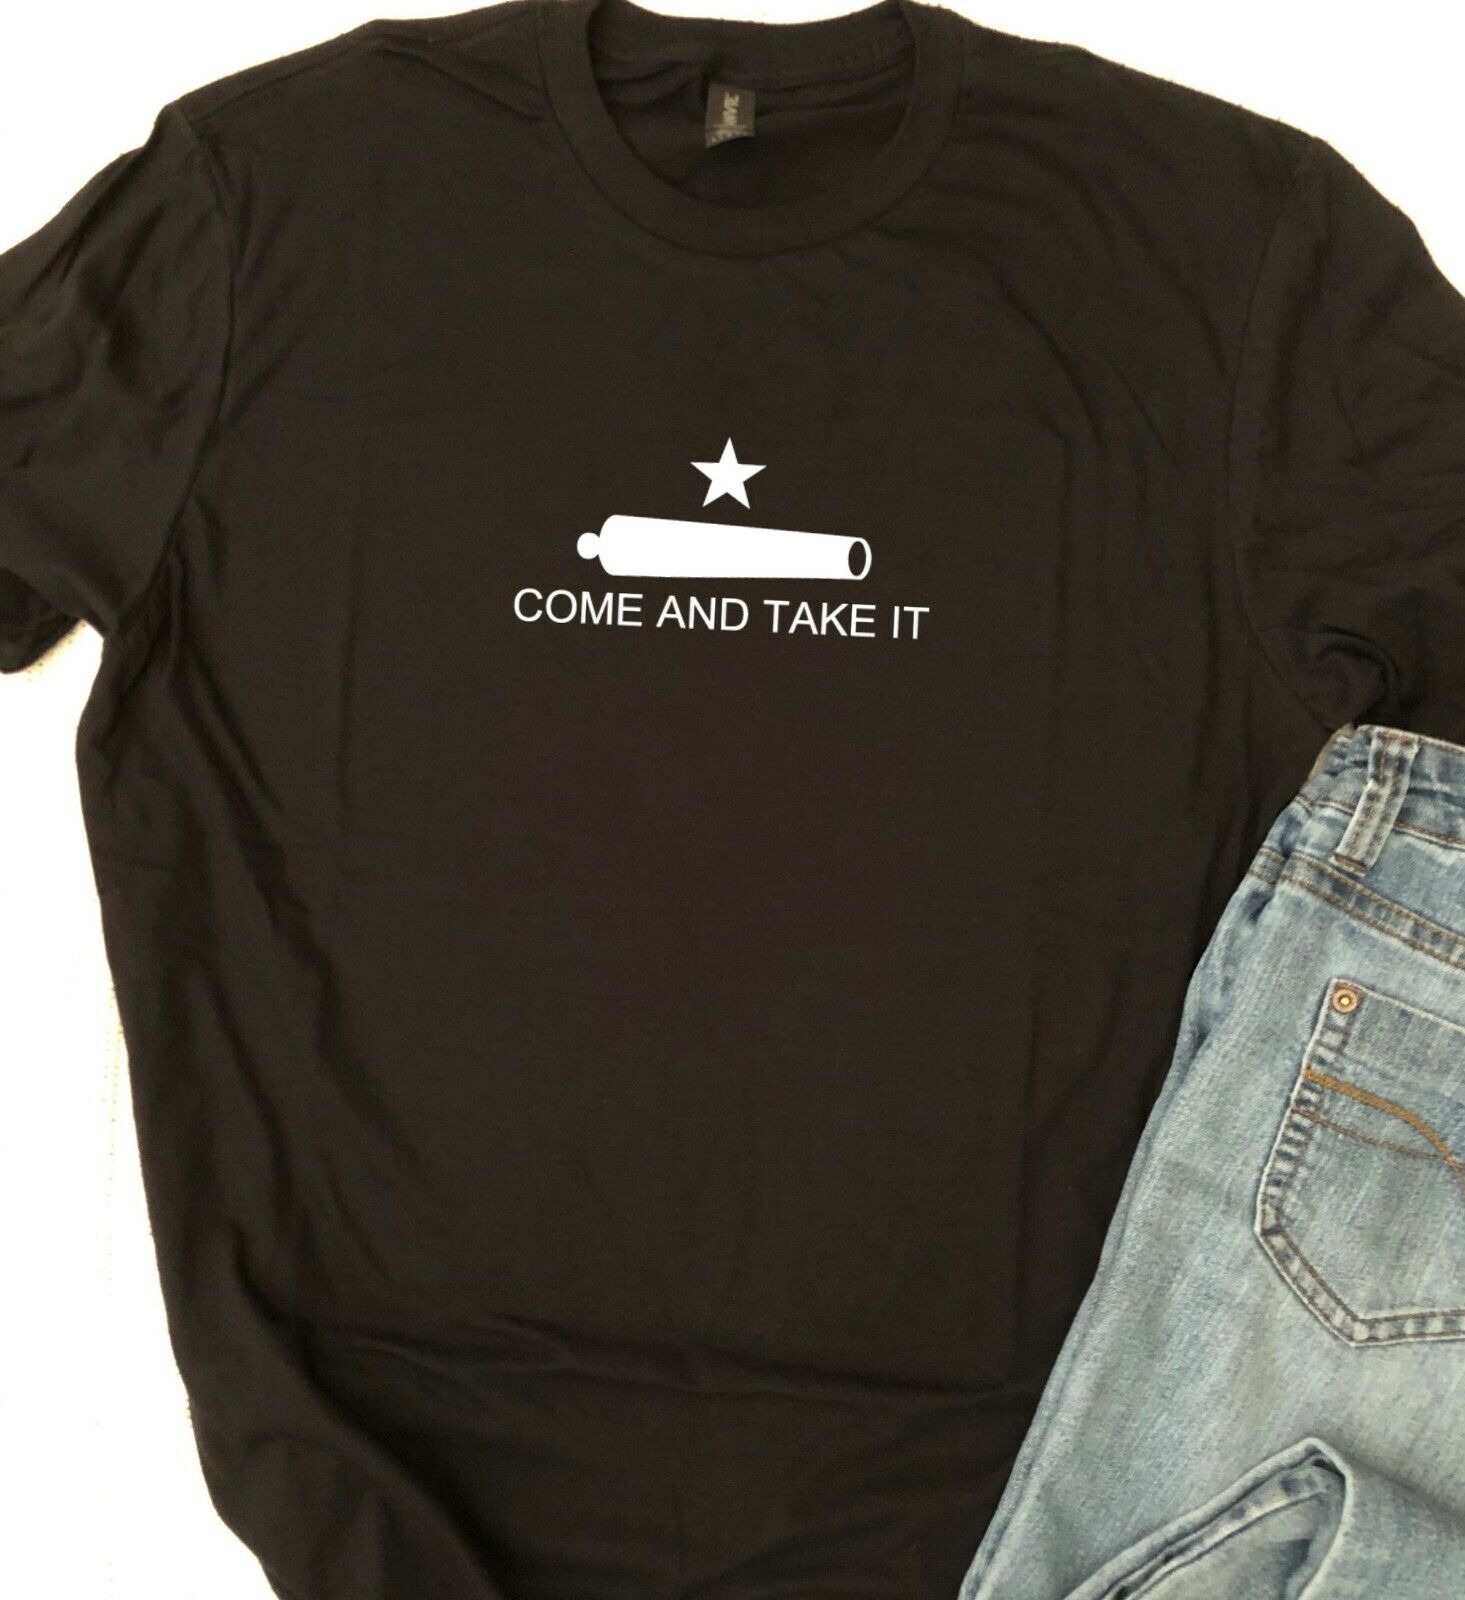 Come and Take It Tshirt - Super Soft Tshirts Gun Rights Tee Second Amendment T